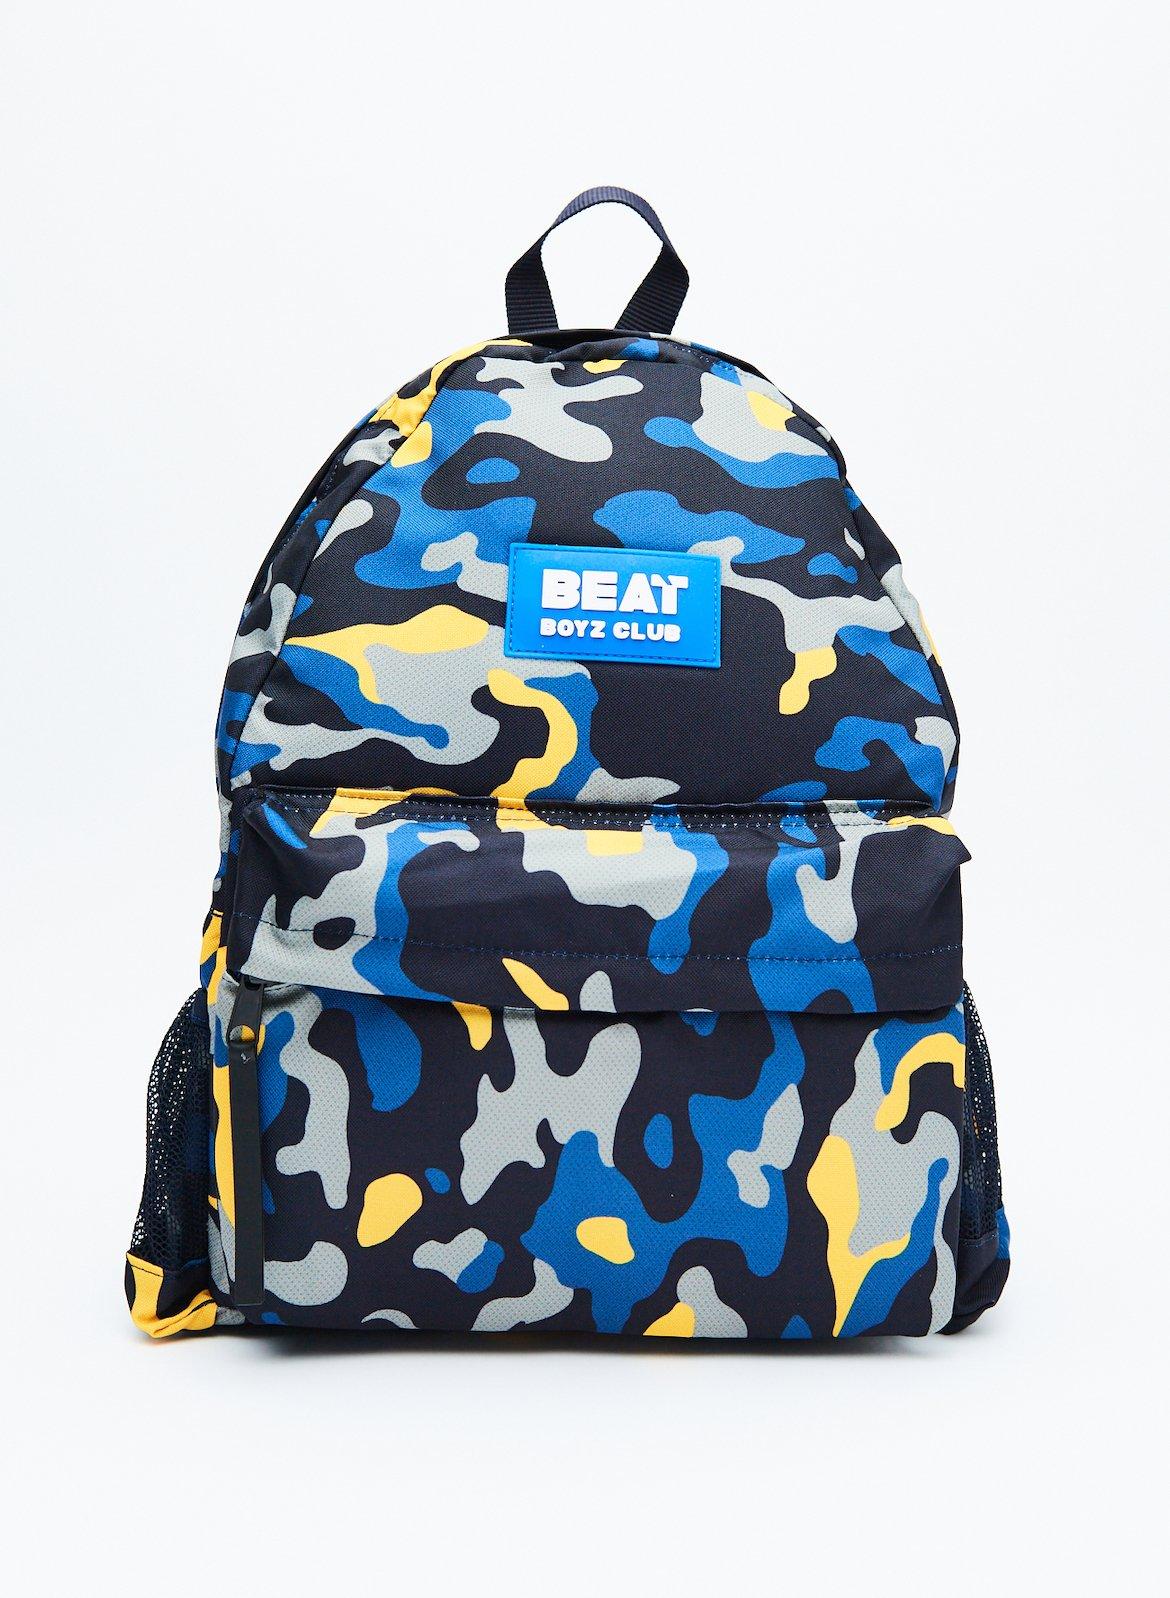 Рюкзак для мальчика 'Camo Pop' Beat Boyz Club, темно-синий